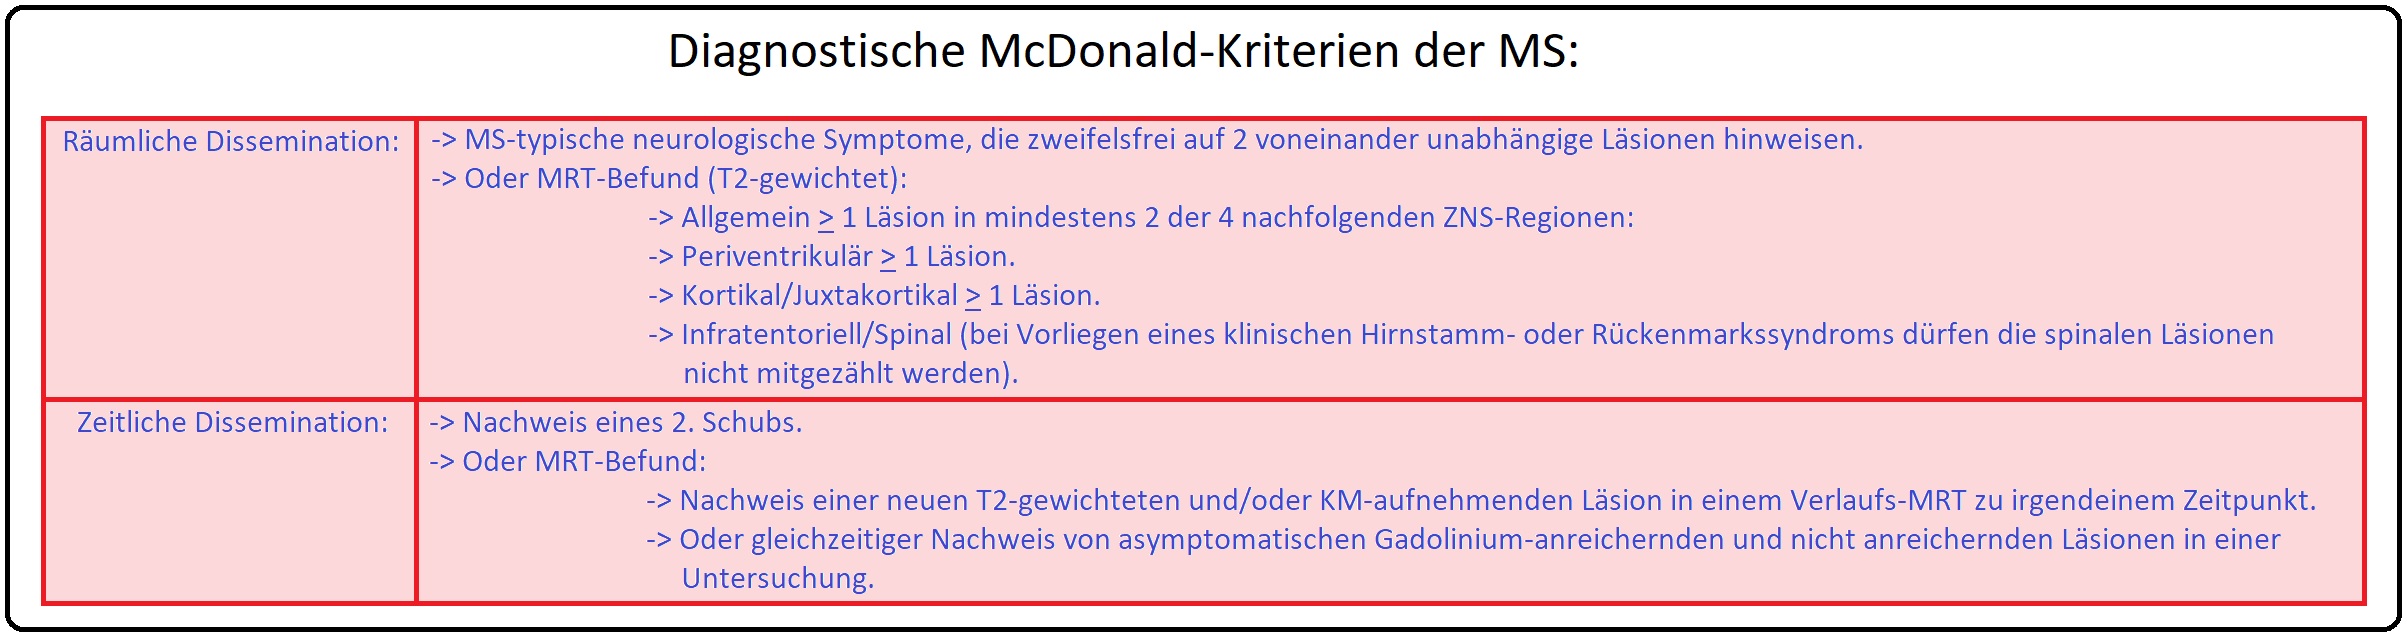 4 Diagnostische McDonald Kriterien der MS